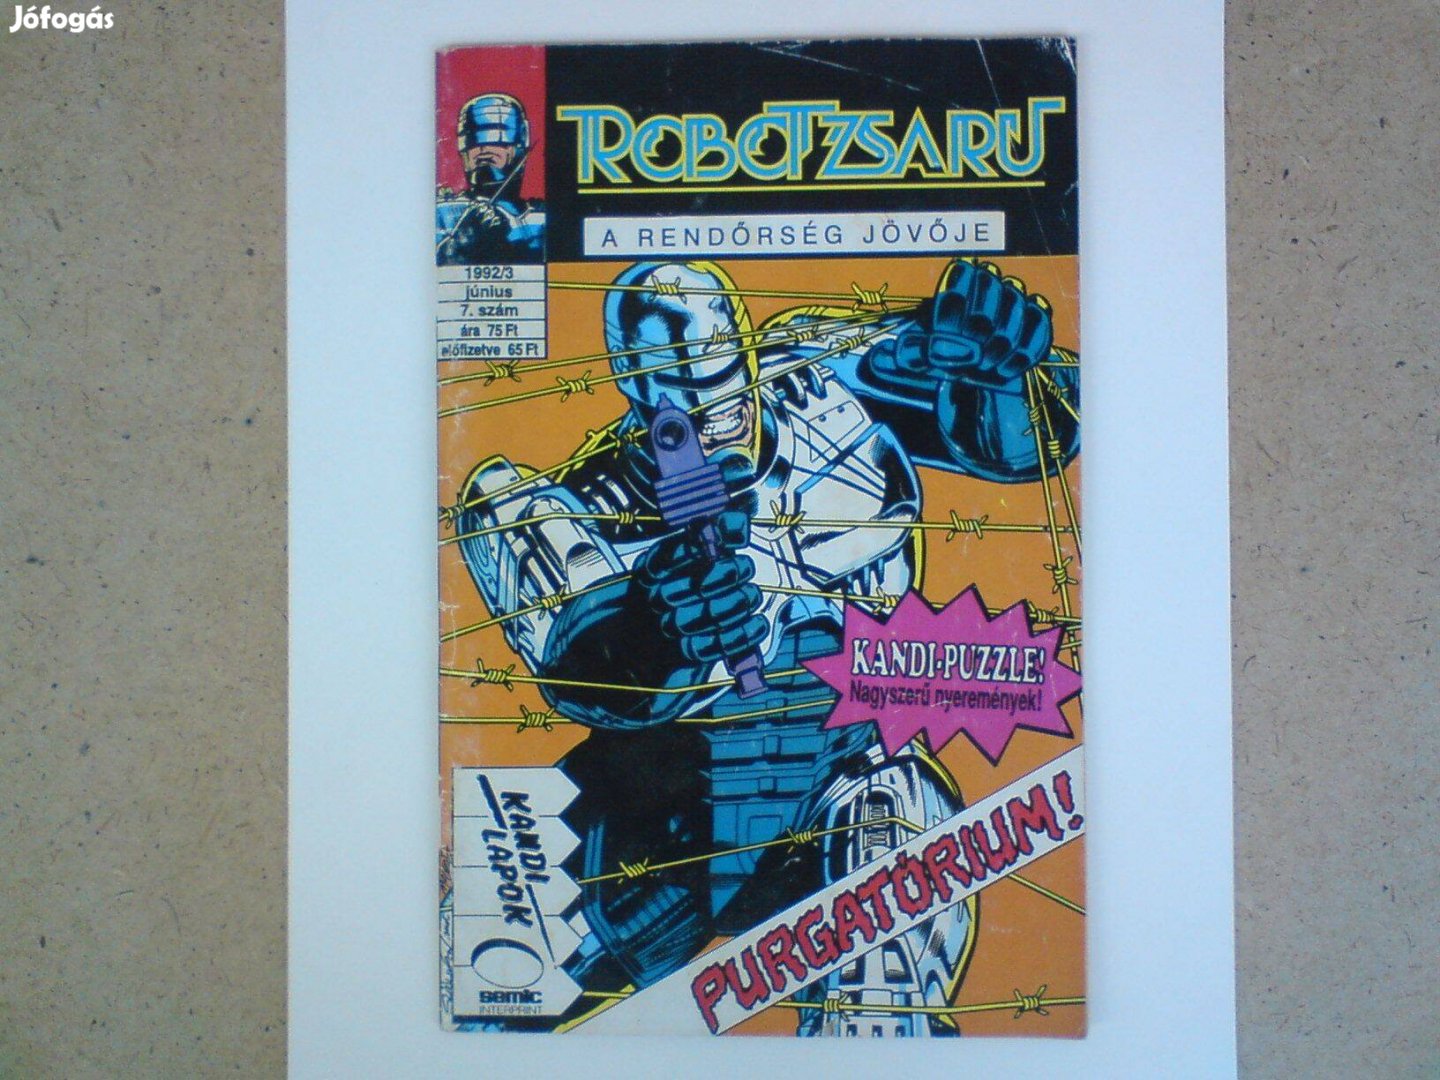 Régi képregény - Robotzsaru 1992/3. Június 7. szám